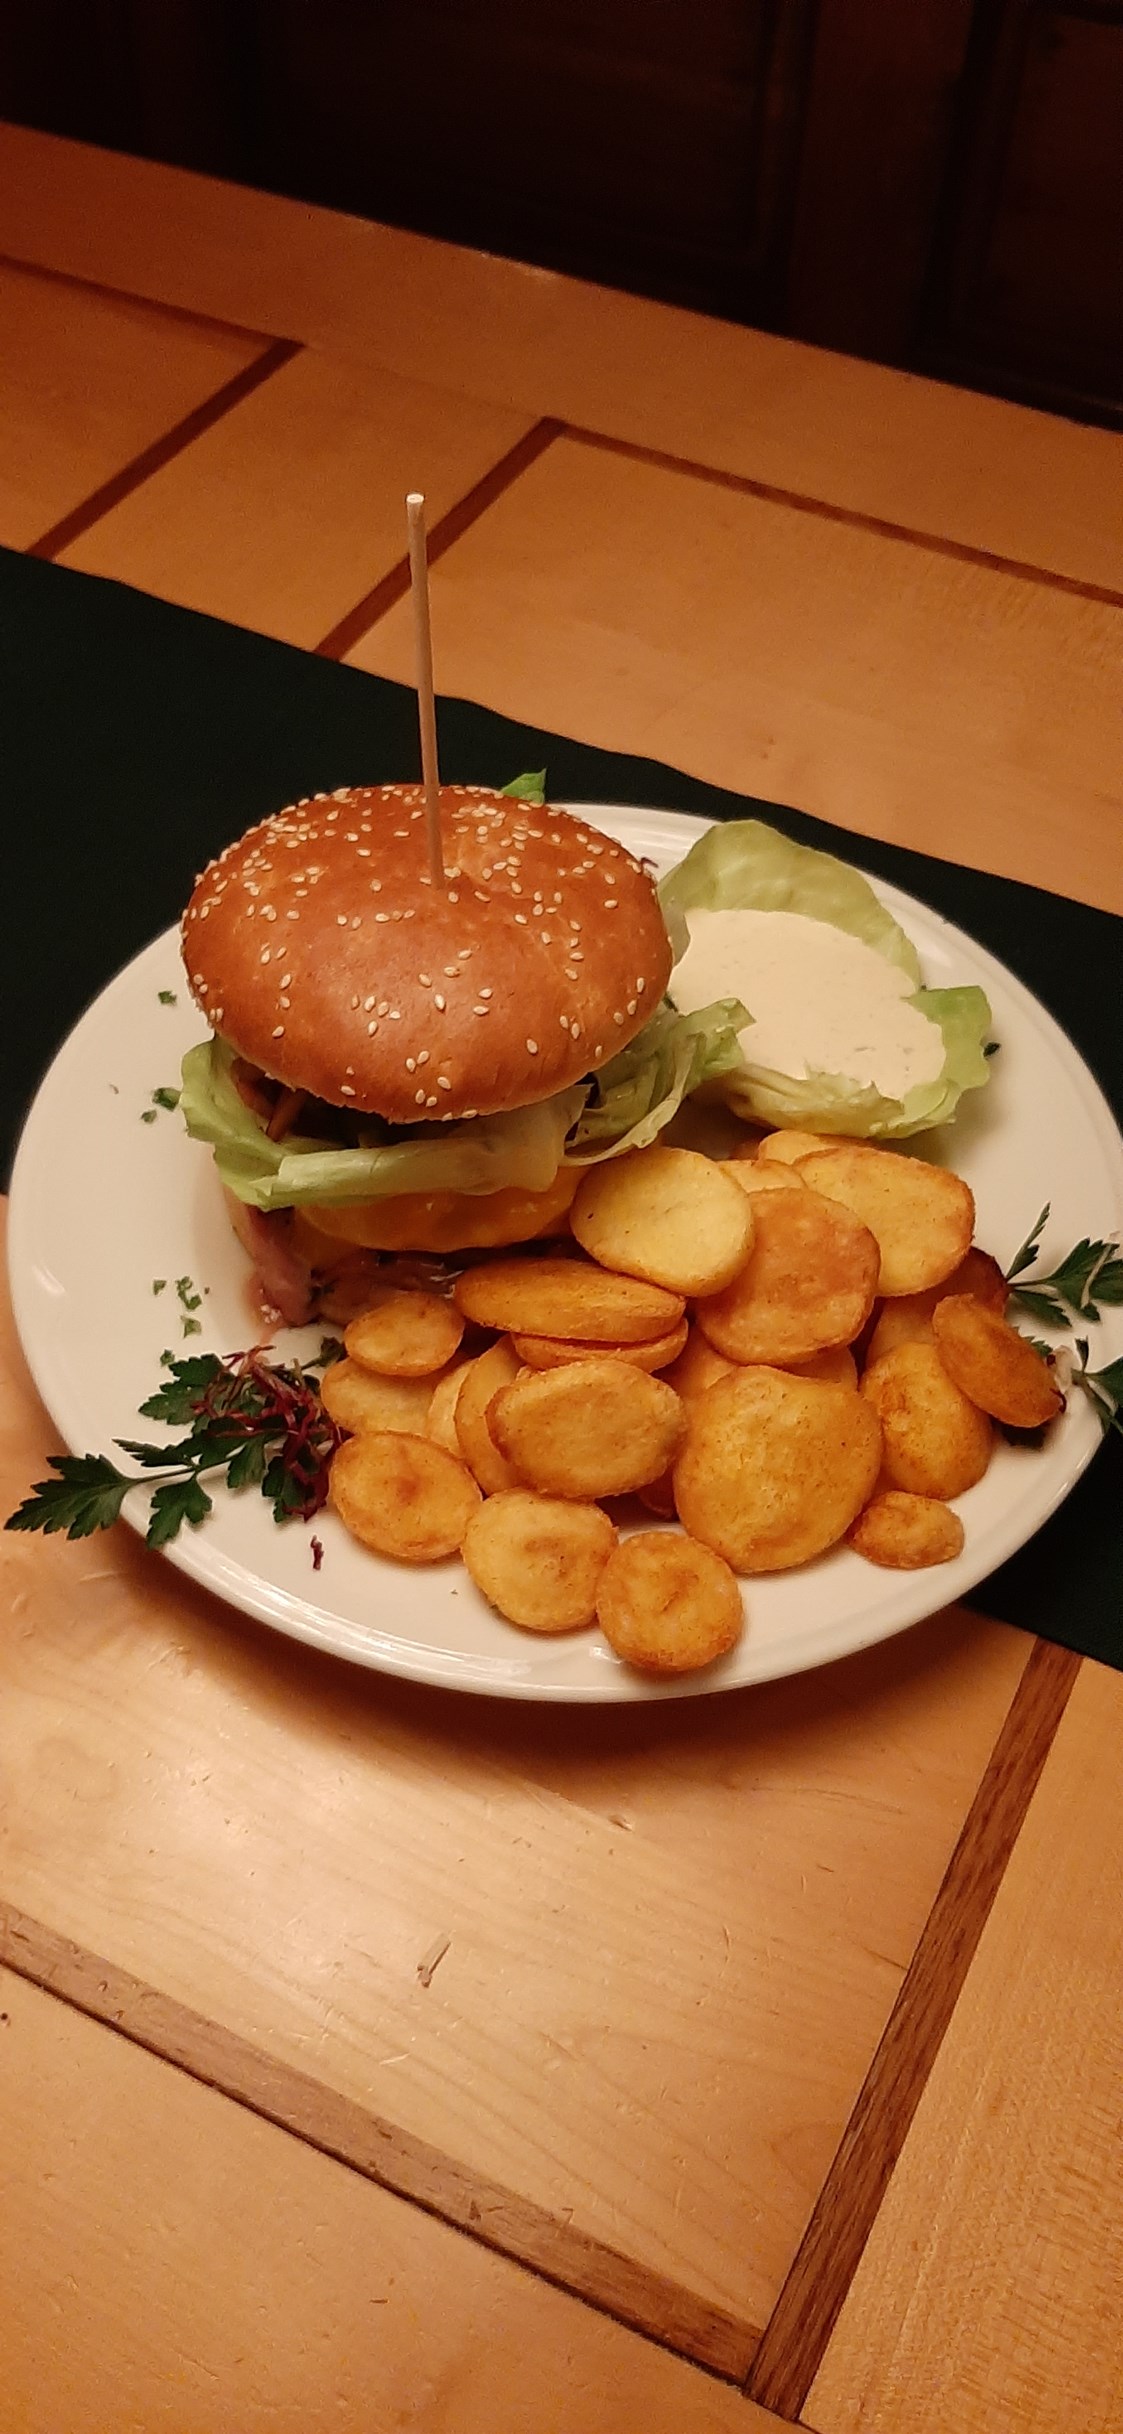 Restaurant: Burger gibt es auch - manchmal
12.90 € - SophienBäck